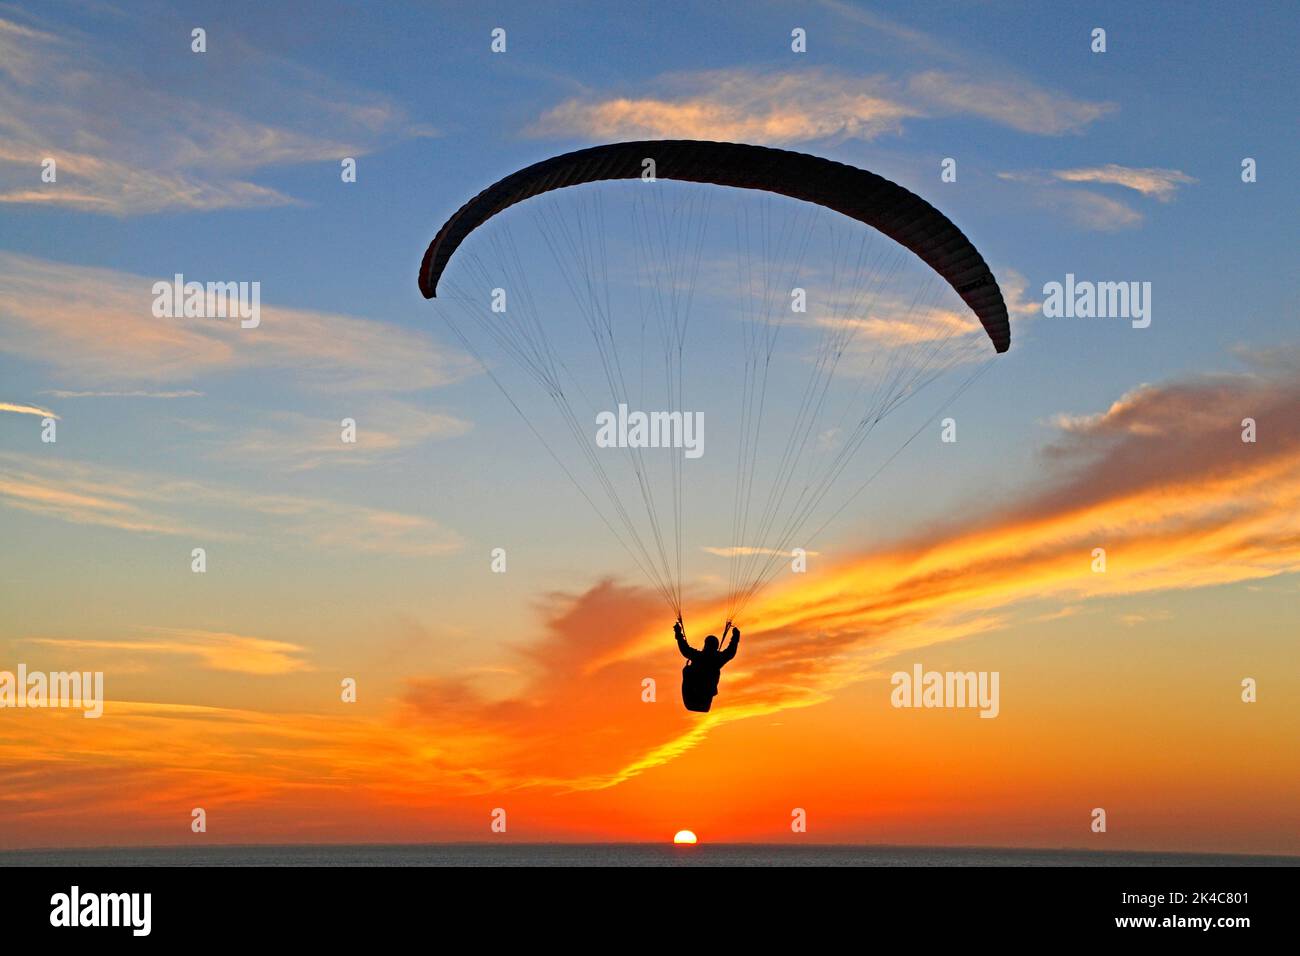 Hang Glider, parachute, contre le coucher du soleil, le ciel, Norfolk, Angleterre, Royaume-Uni Banque D'Images